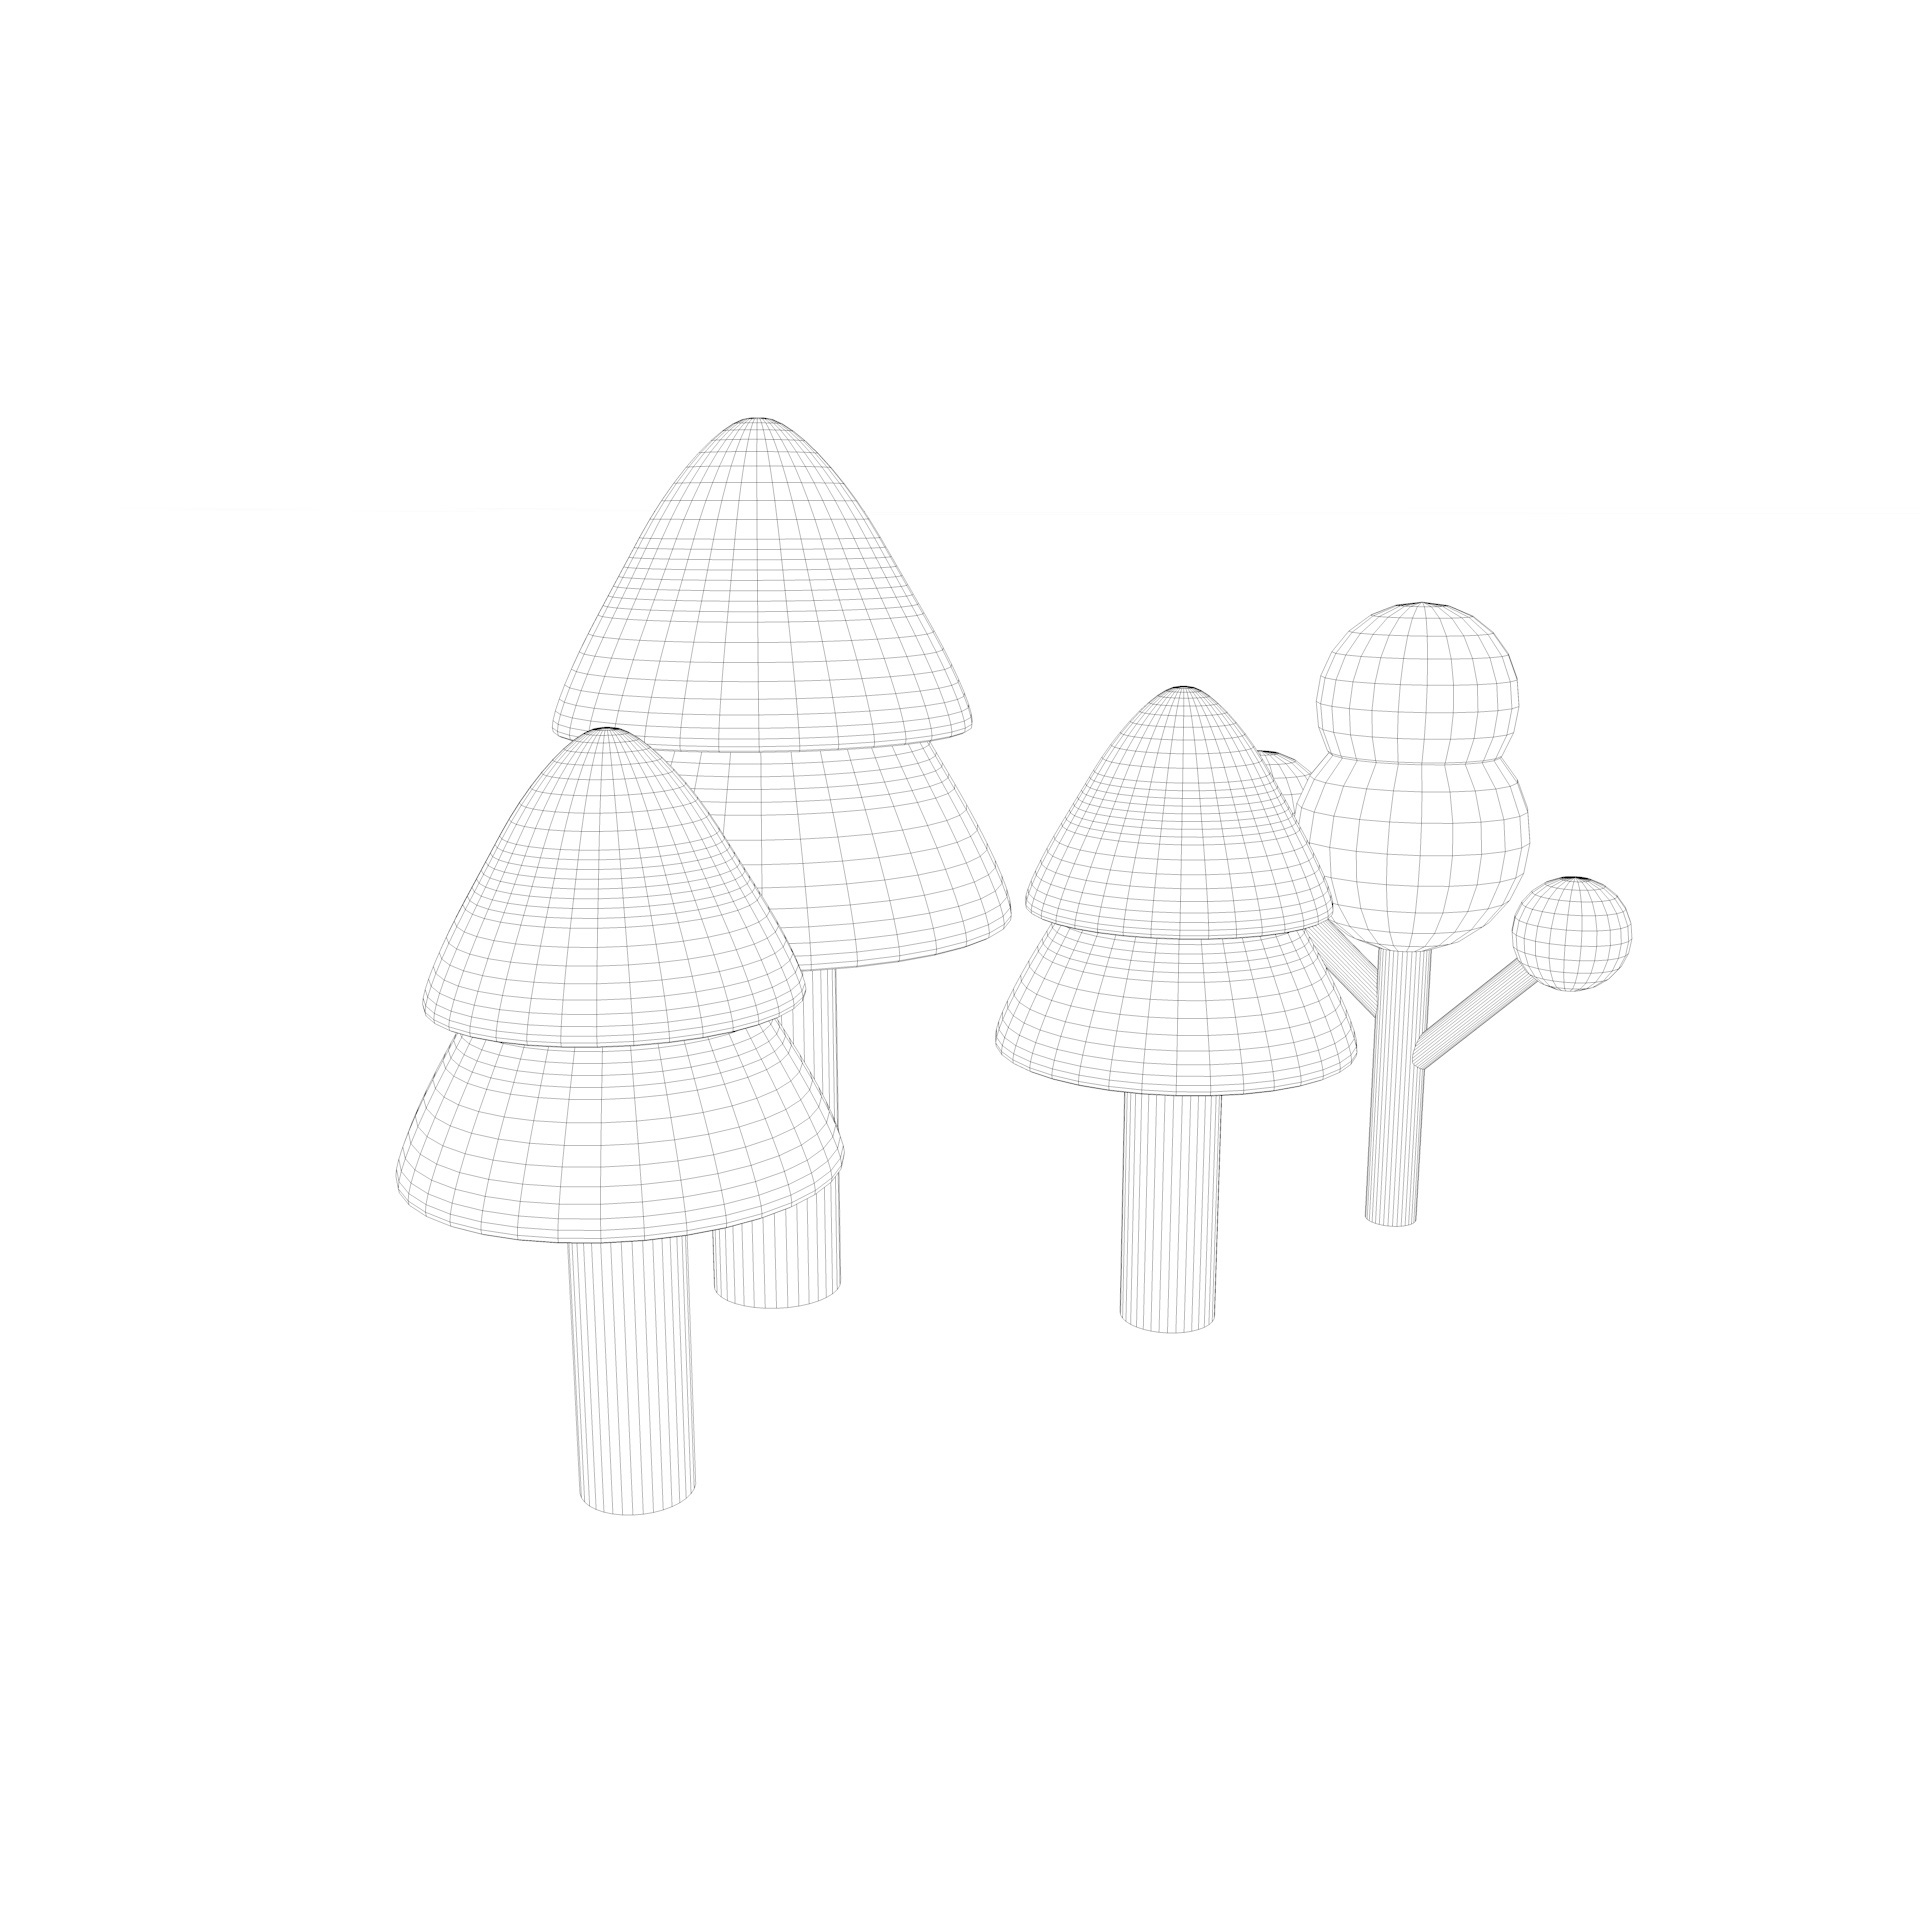 3Д модел цртаног дрвета